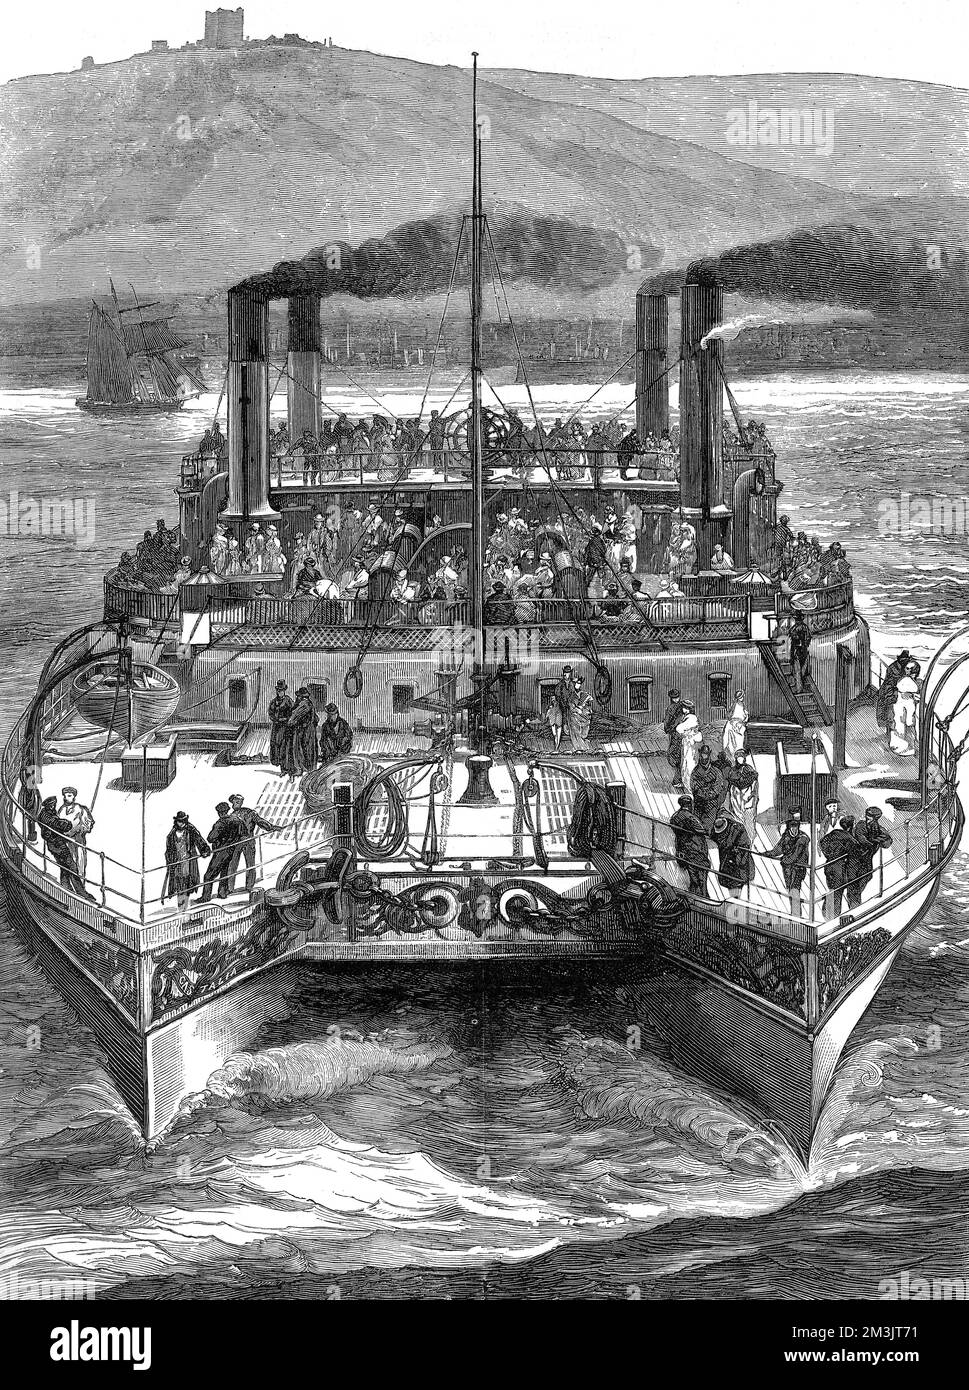 Bateau à vapeur à deux roues, « Castalia », qui quitte Douvres pour Calais, en août 1875. Construite en 1874 pour la Channel Steamship Company anglaise, sa conception radicale était destinée à améliorer la stabilité et le maintien de la mer. Cependant, la conception n'a pas été un succès et elle a été vendue, en 1883, à la Metropolitan asiles Board pour servir d'hôpital flottant sur la Tamise. 1875 Banque D'Images